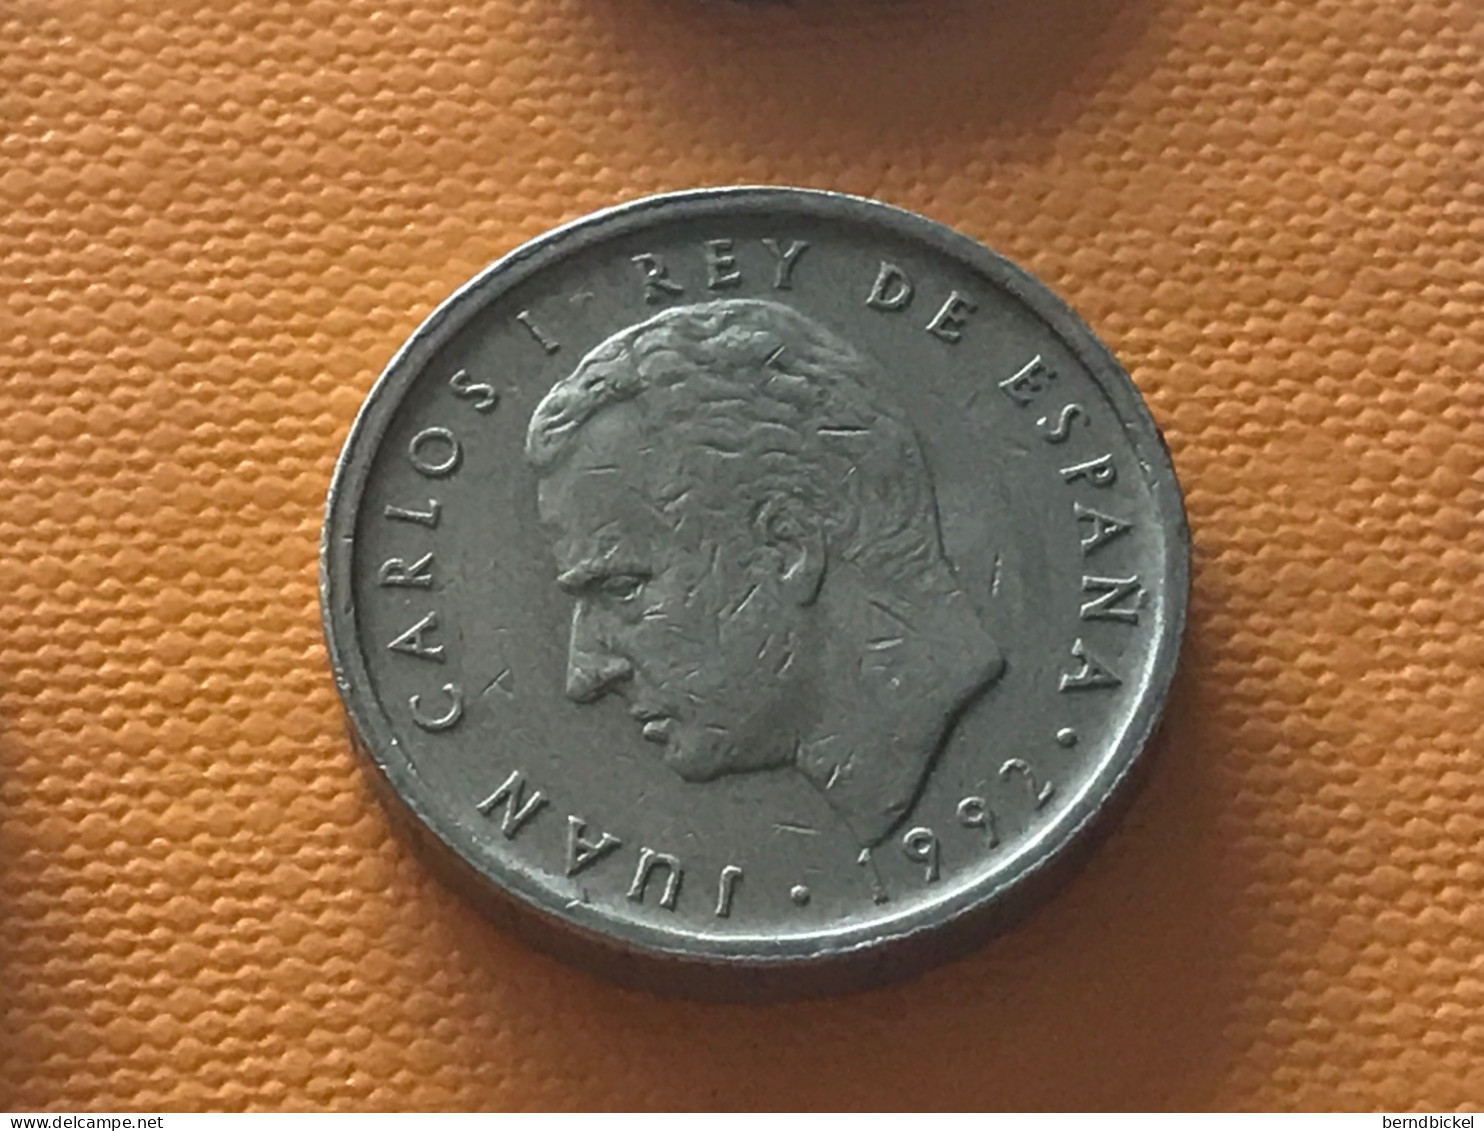 Münze Münzen Umlaufmünze Spanien 100 Pesetas 1992 - 100 Pesetas